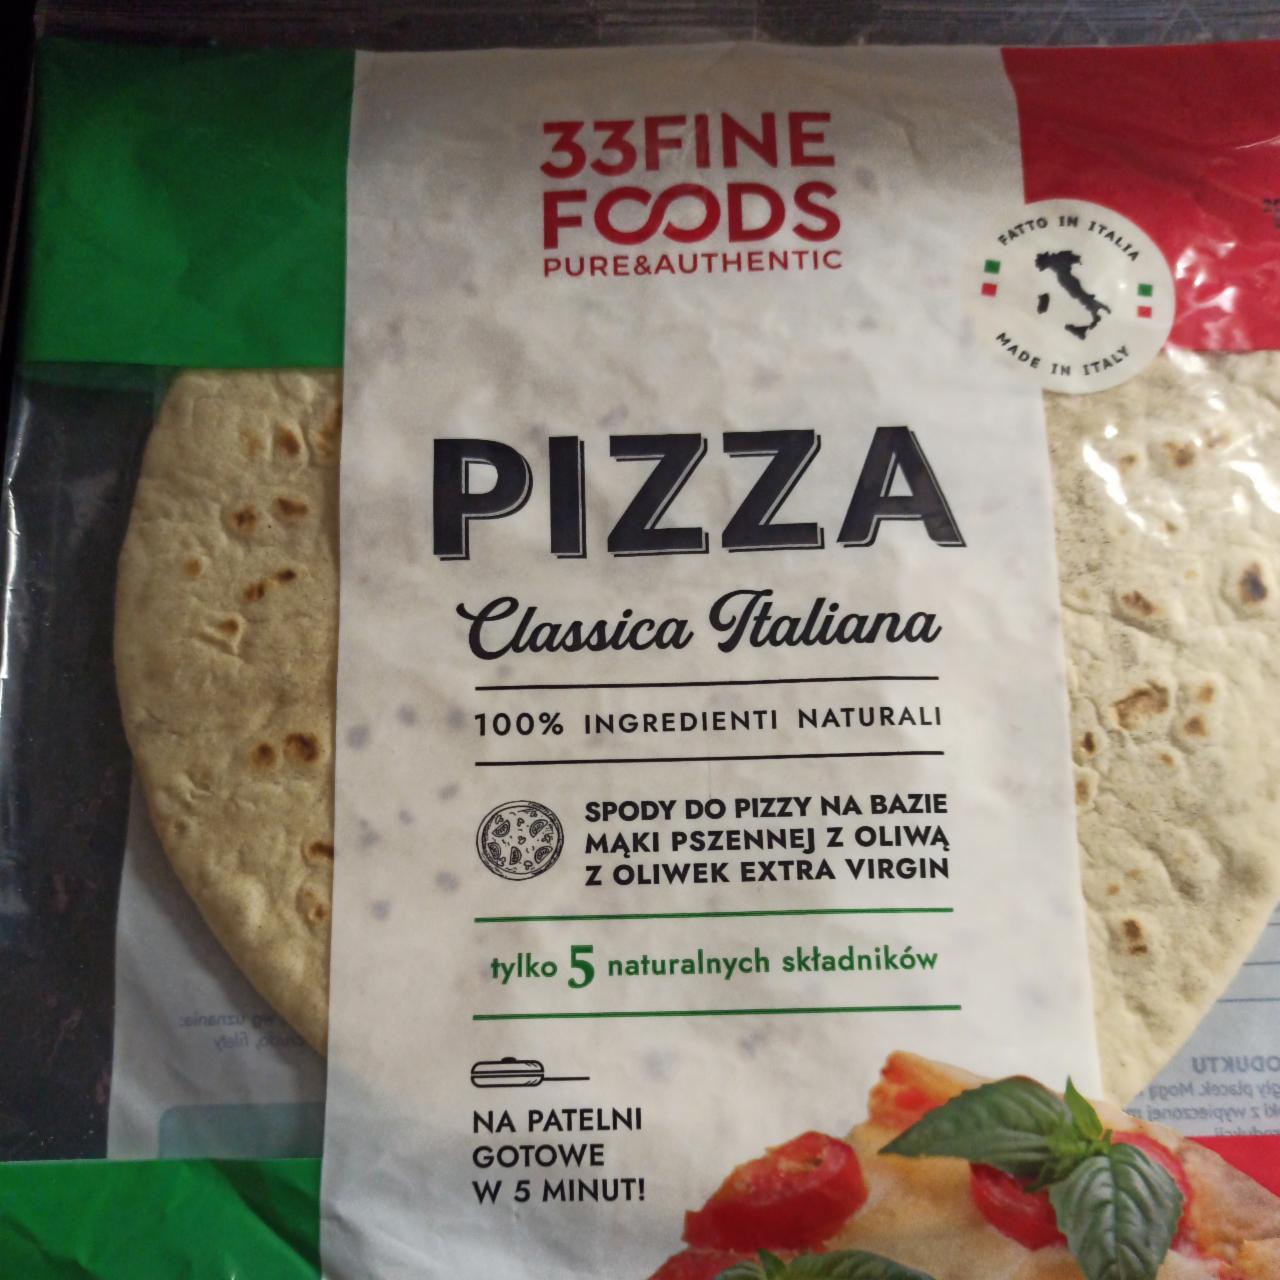 Zdjęcia - pizza classica italiano spody do pizzy 33 Fine Foods